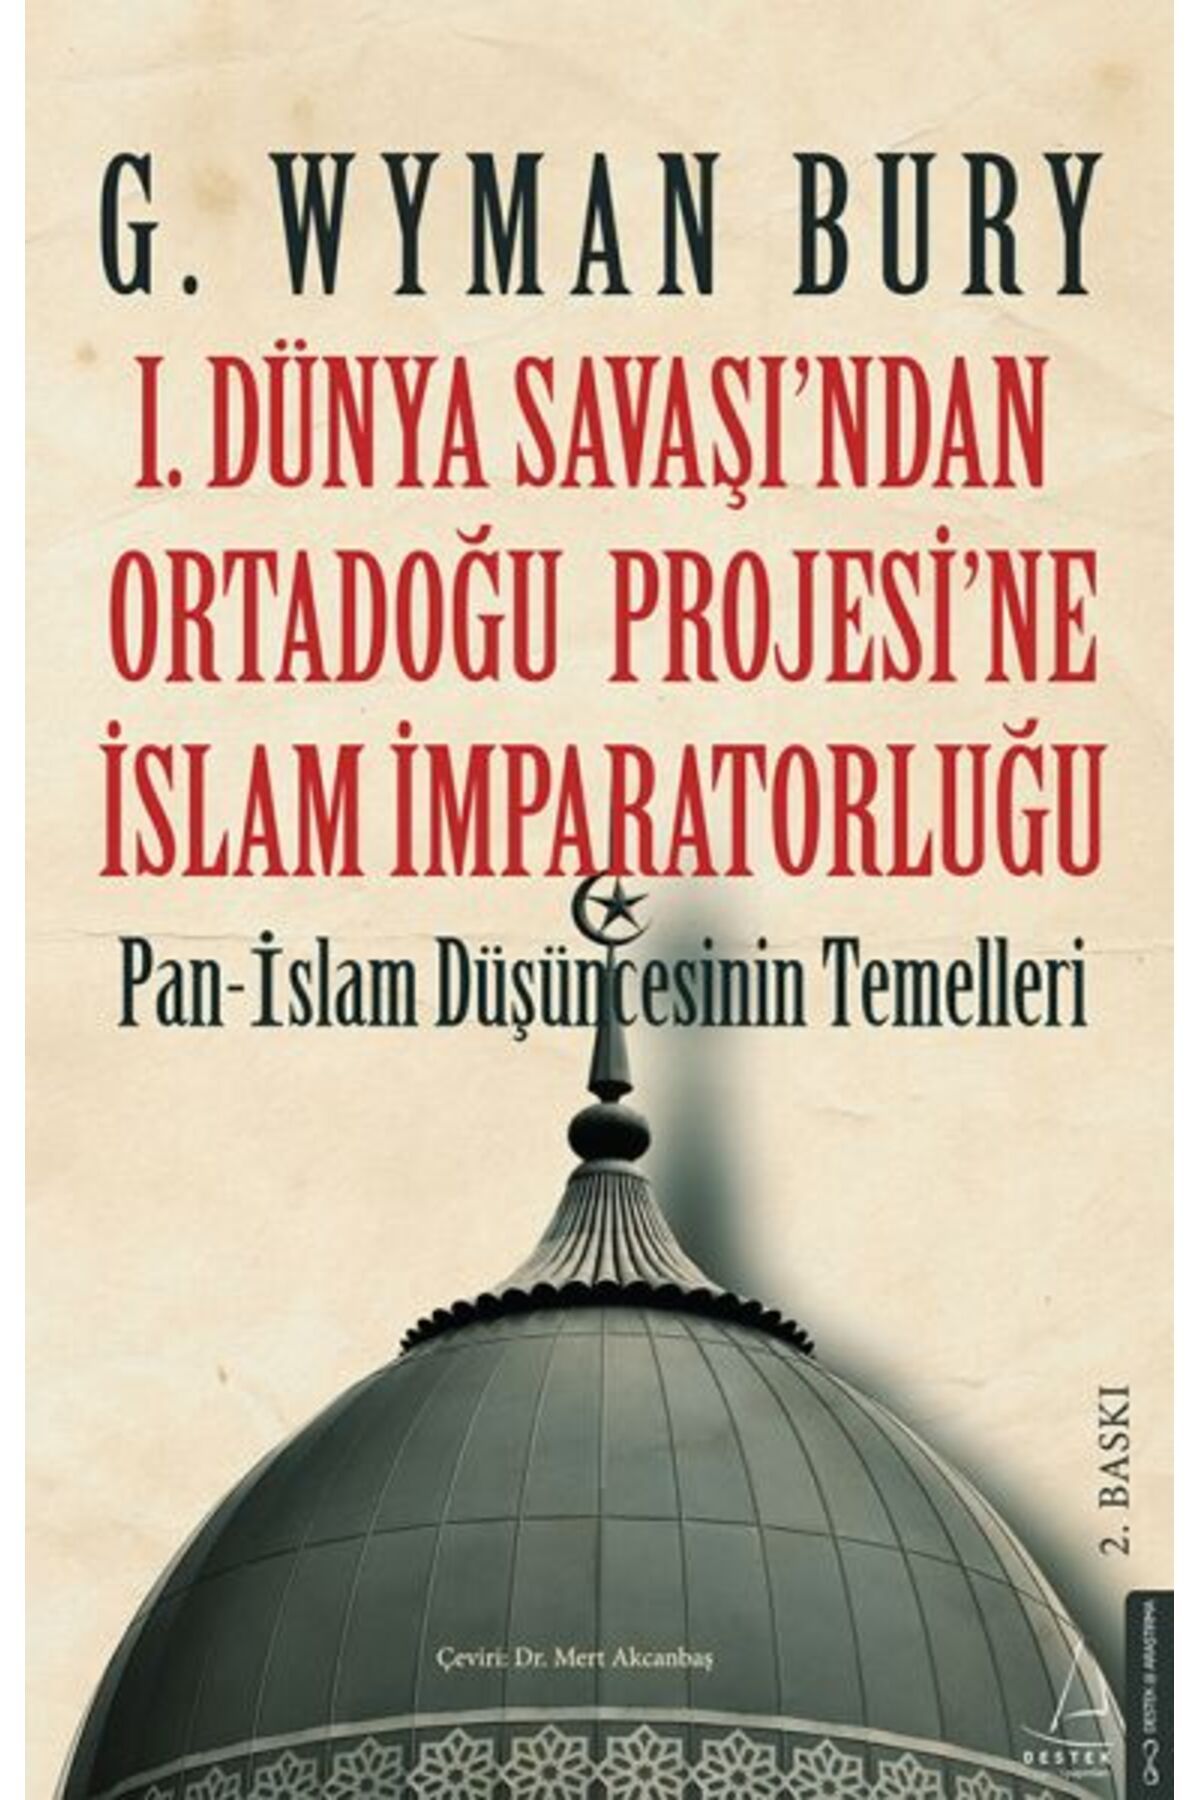 Destek Yayınları I. Dünya Savaş ından Ortadoğu Proje sine İslam İmparatorluğu